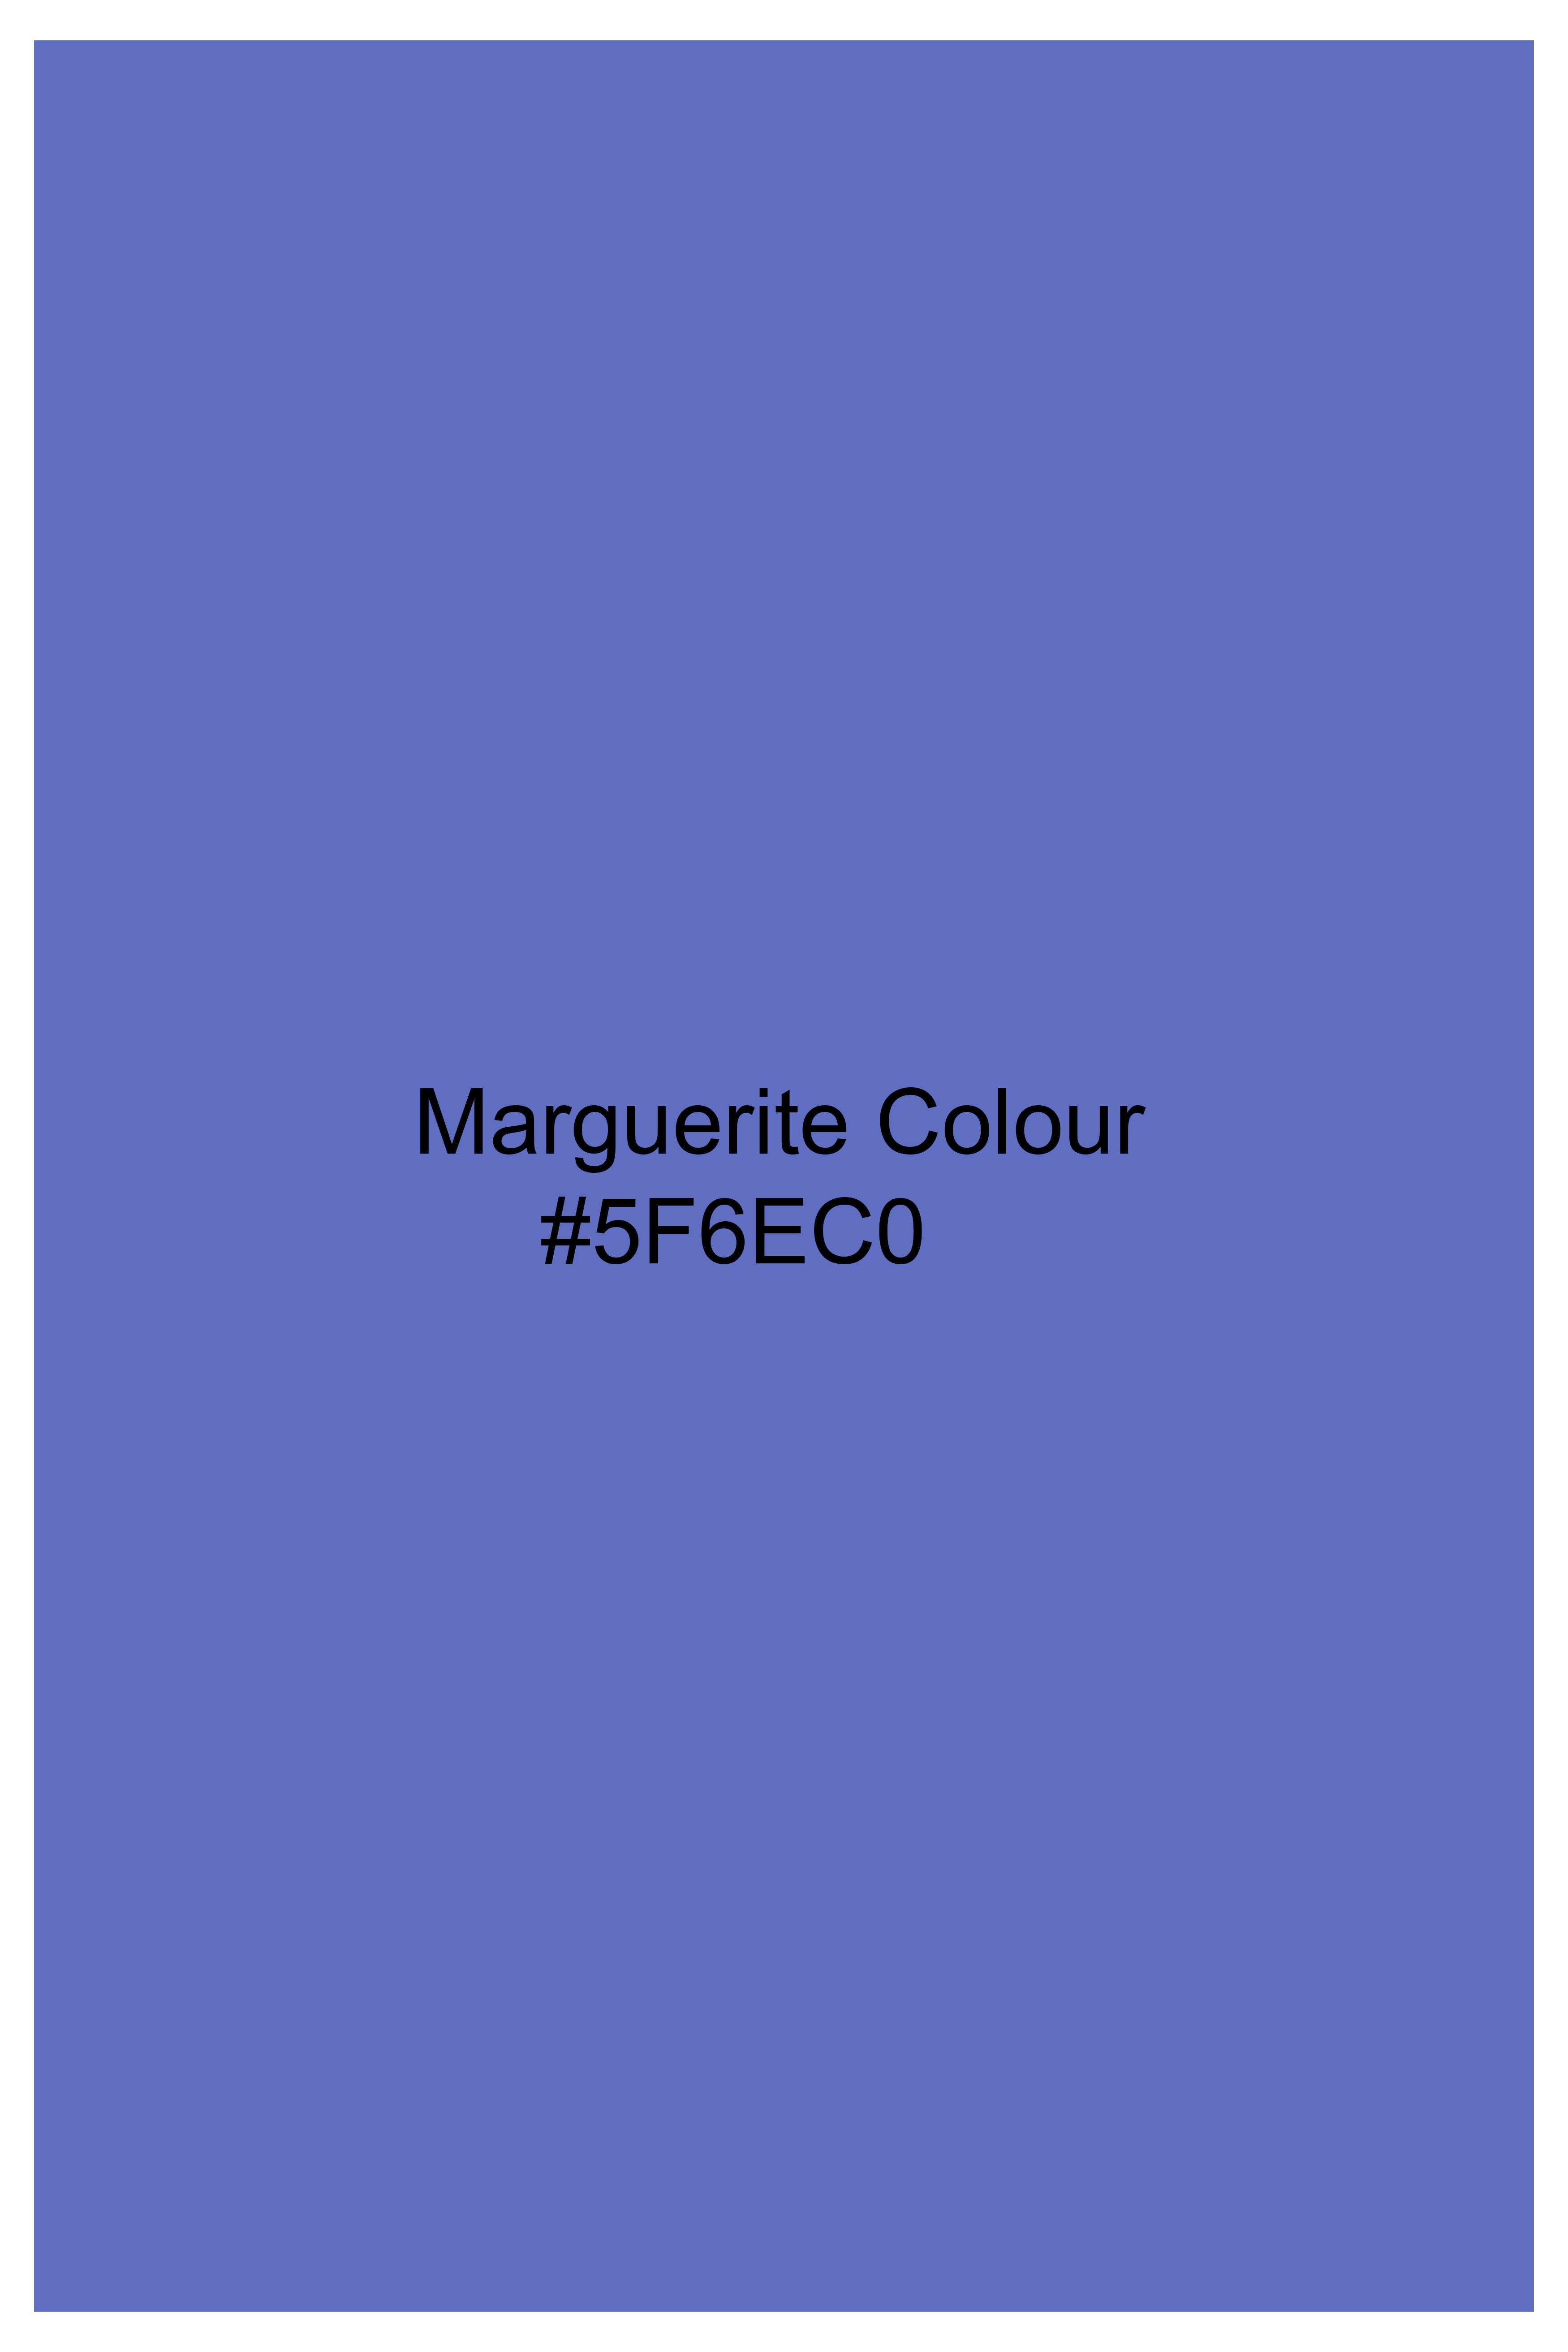 Maguerite Blue Premium Cotton Shorts SR361-28, SR361-30, SR361-32, SR361-34, SR361-36, SR361-38, SR361-40, SR361-42, SR361-44